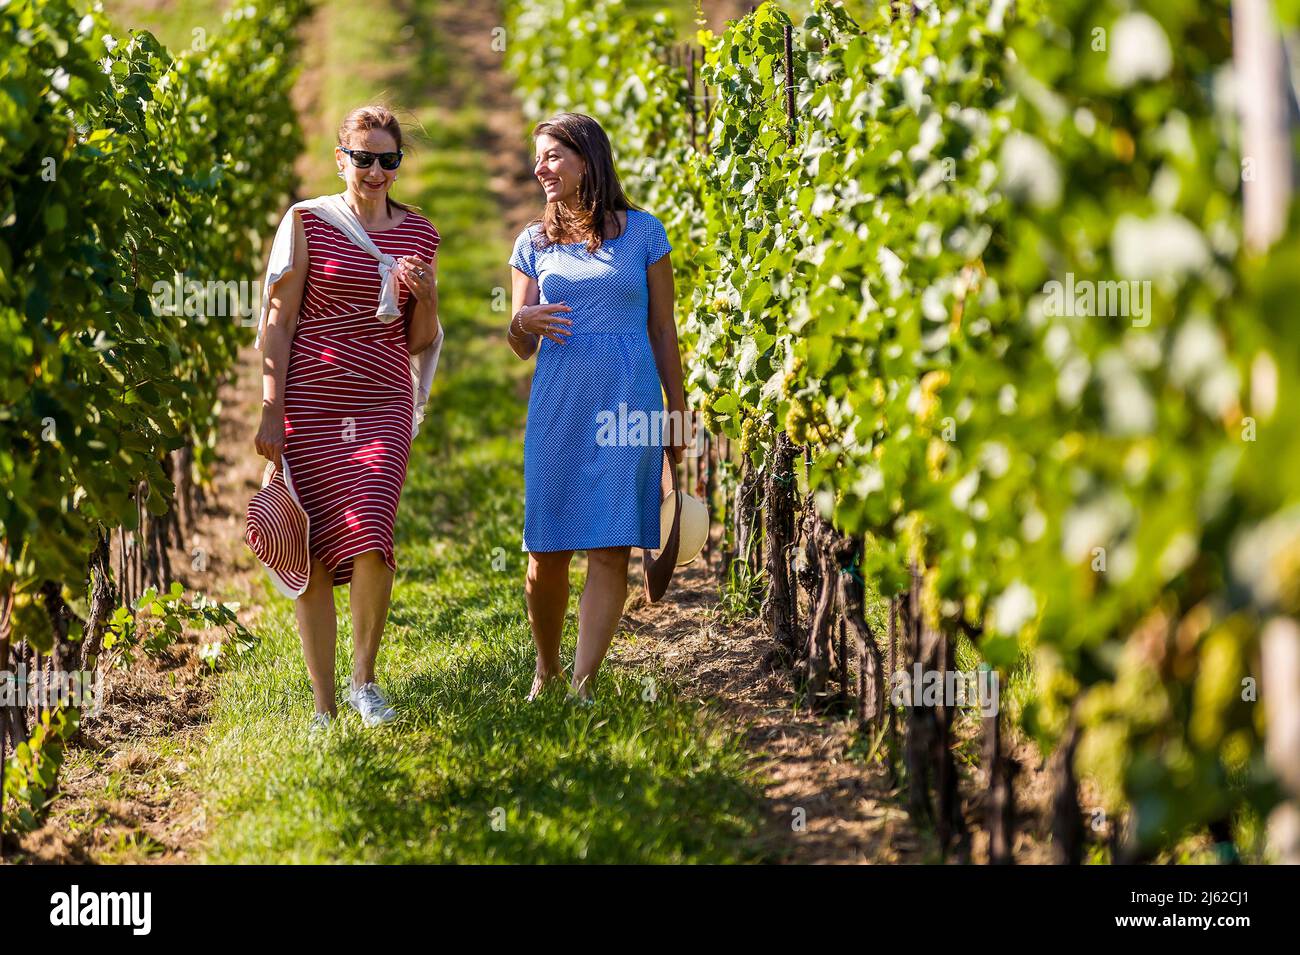 two women strolling in summer vineyard Stock Photo